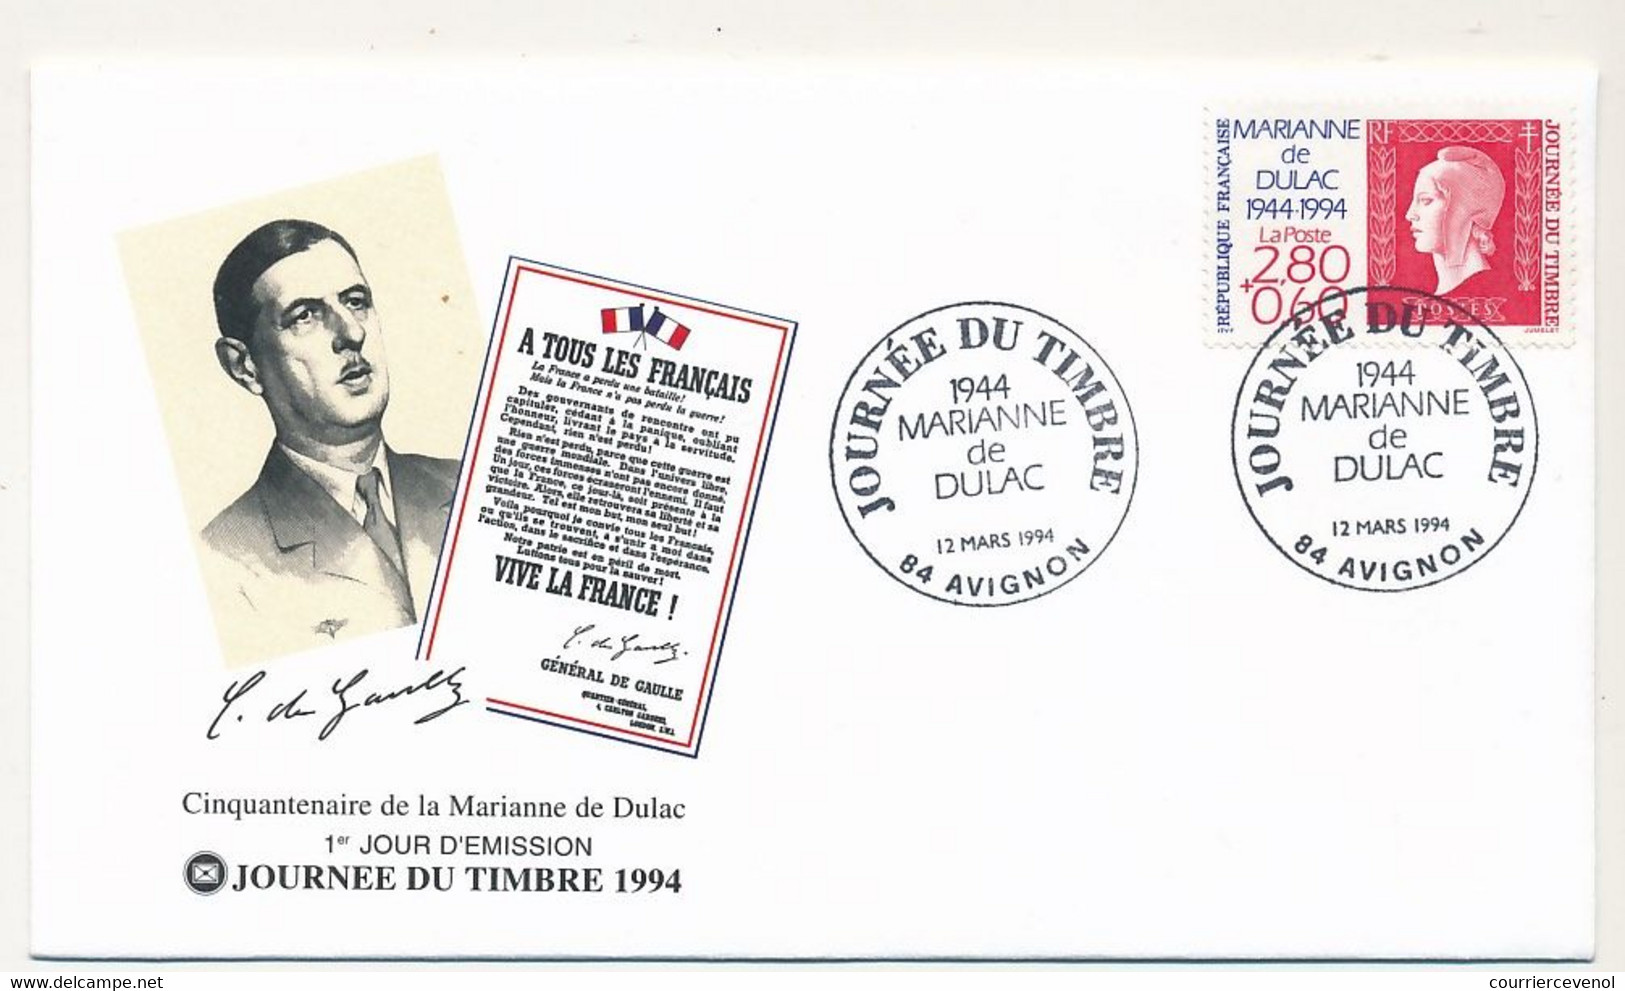 FRANCE - Enveloppe FDC Fédérale - Journée Du Timbre 1994 2,80 + 0,60 Marianne De Dulac - 12/3/1994 AVIGNON - Giornata Del Francobollo